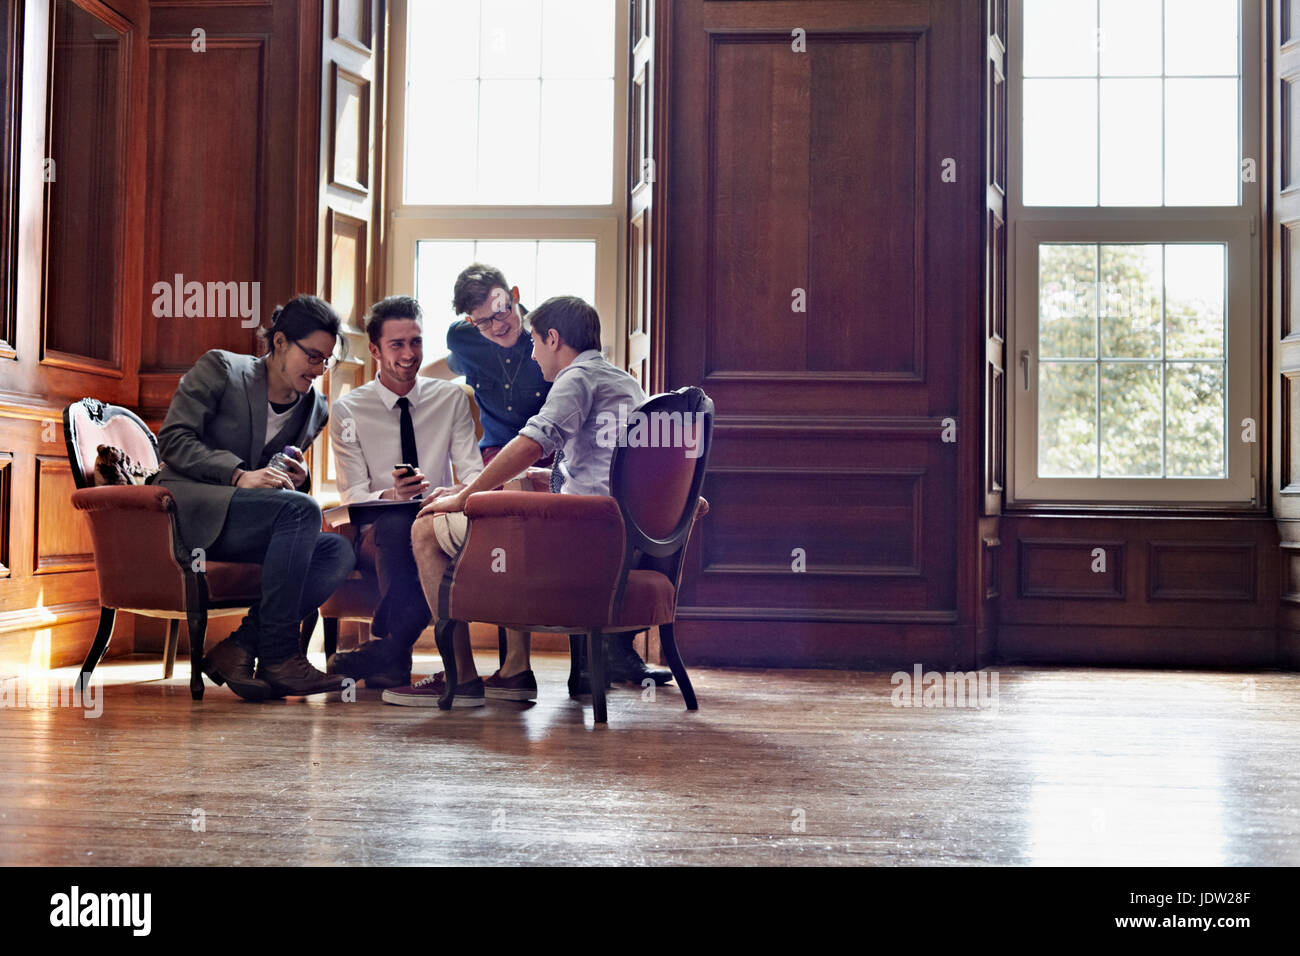 Businessmen talking in ornate room Stock Photo